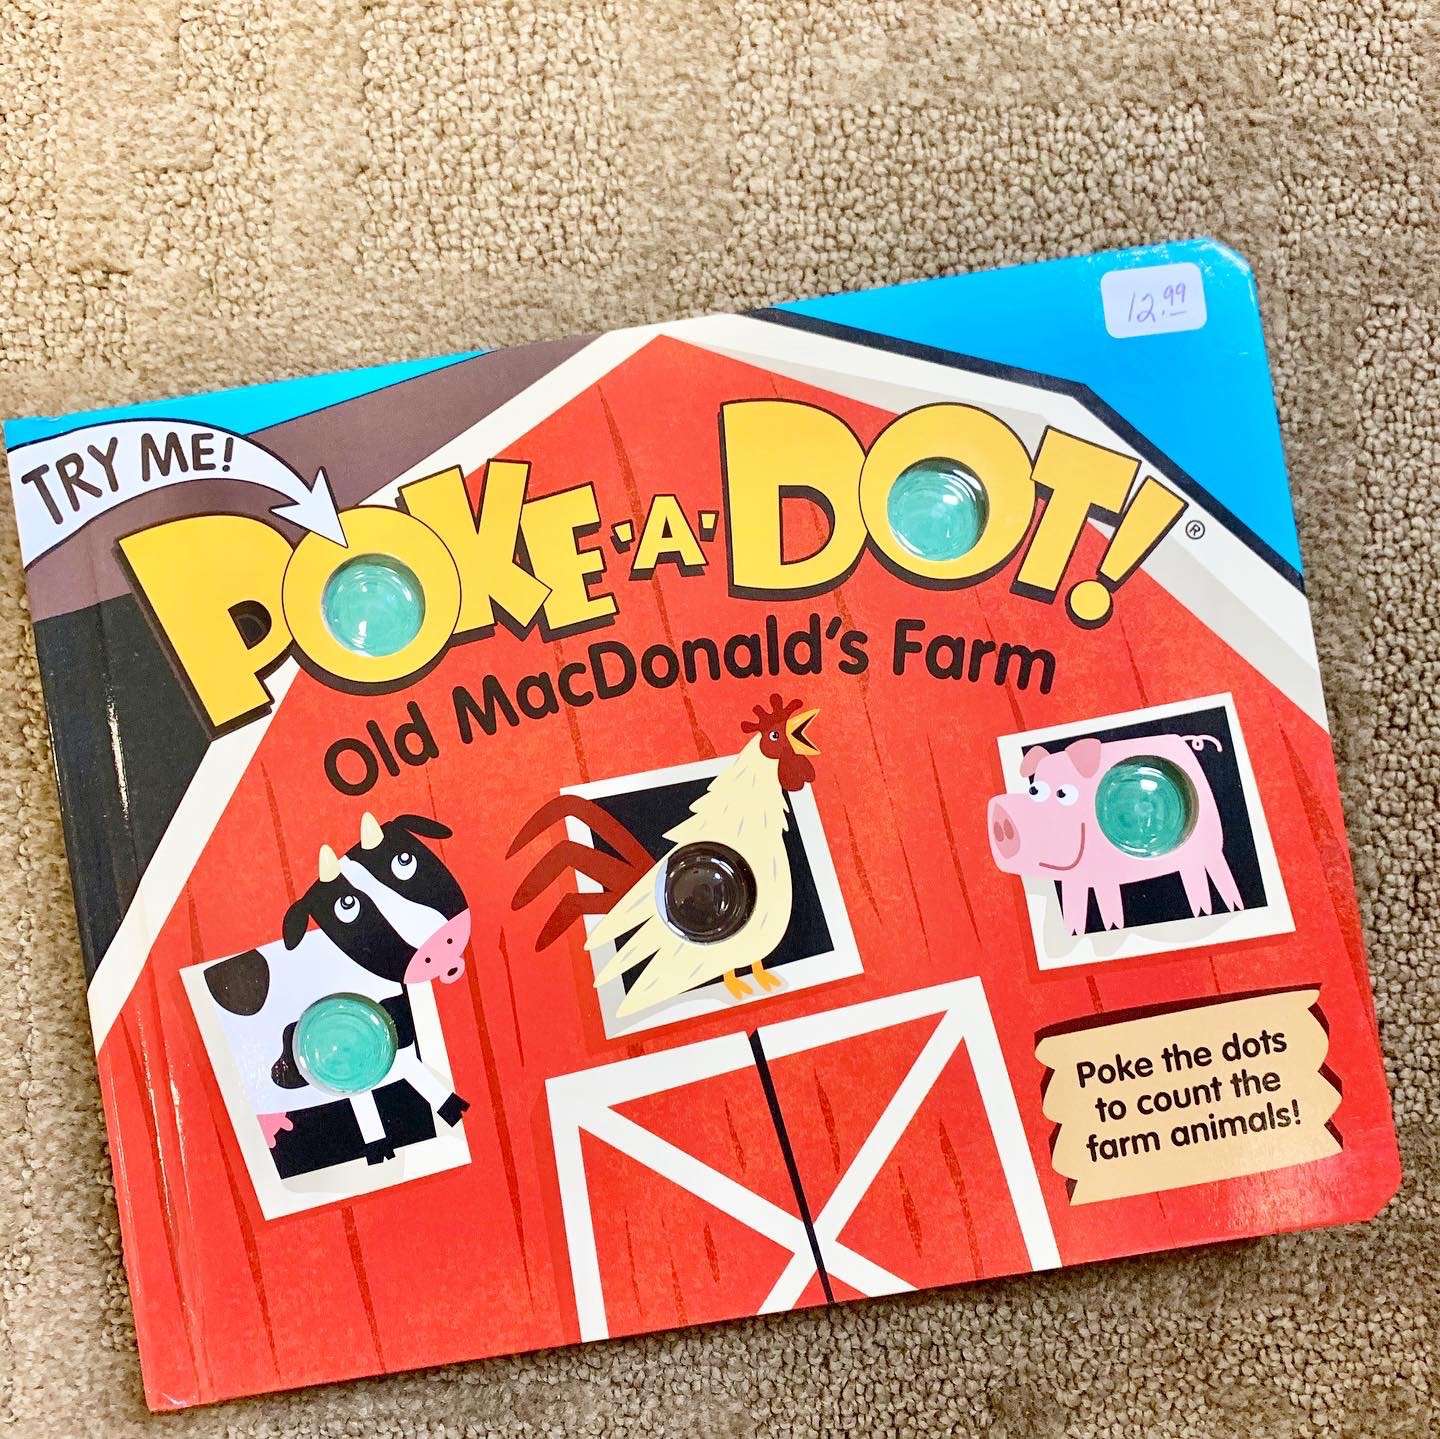 Poke-a-Dot Book